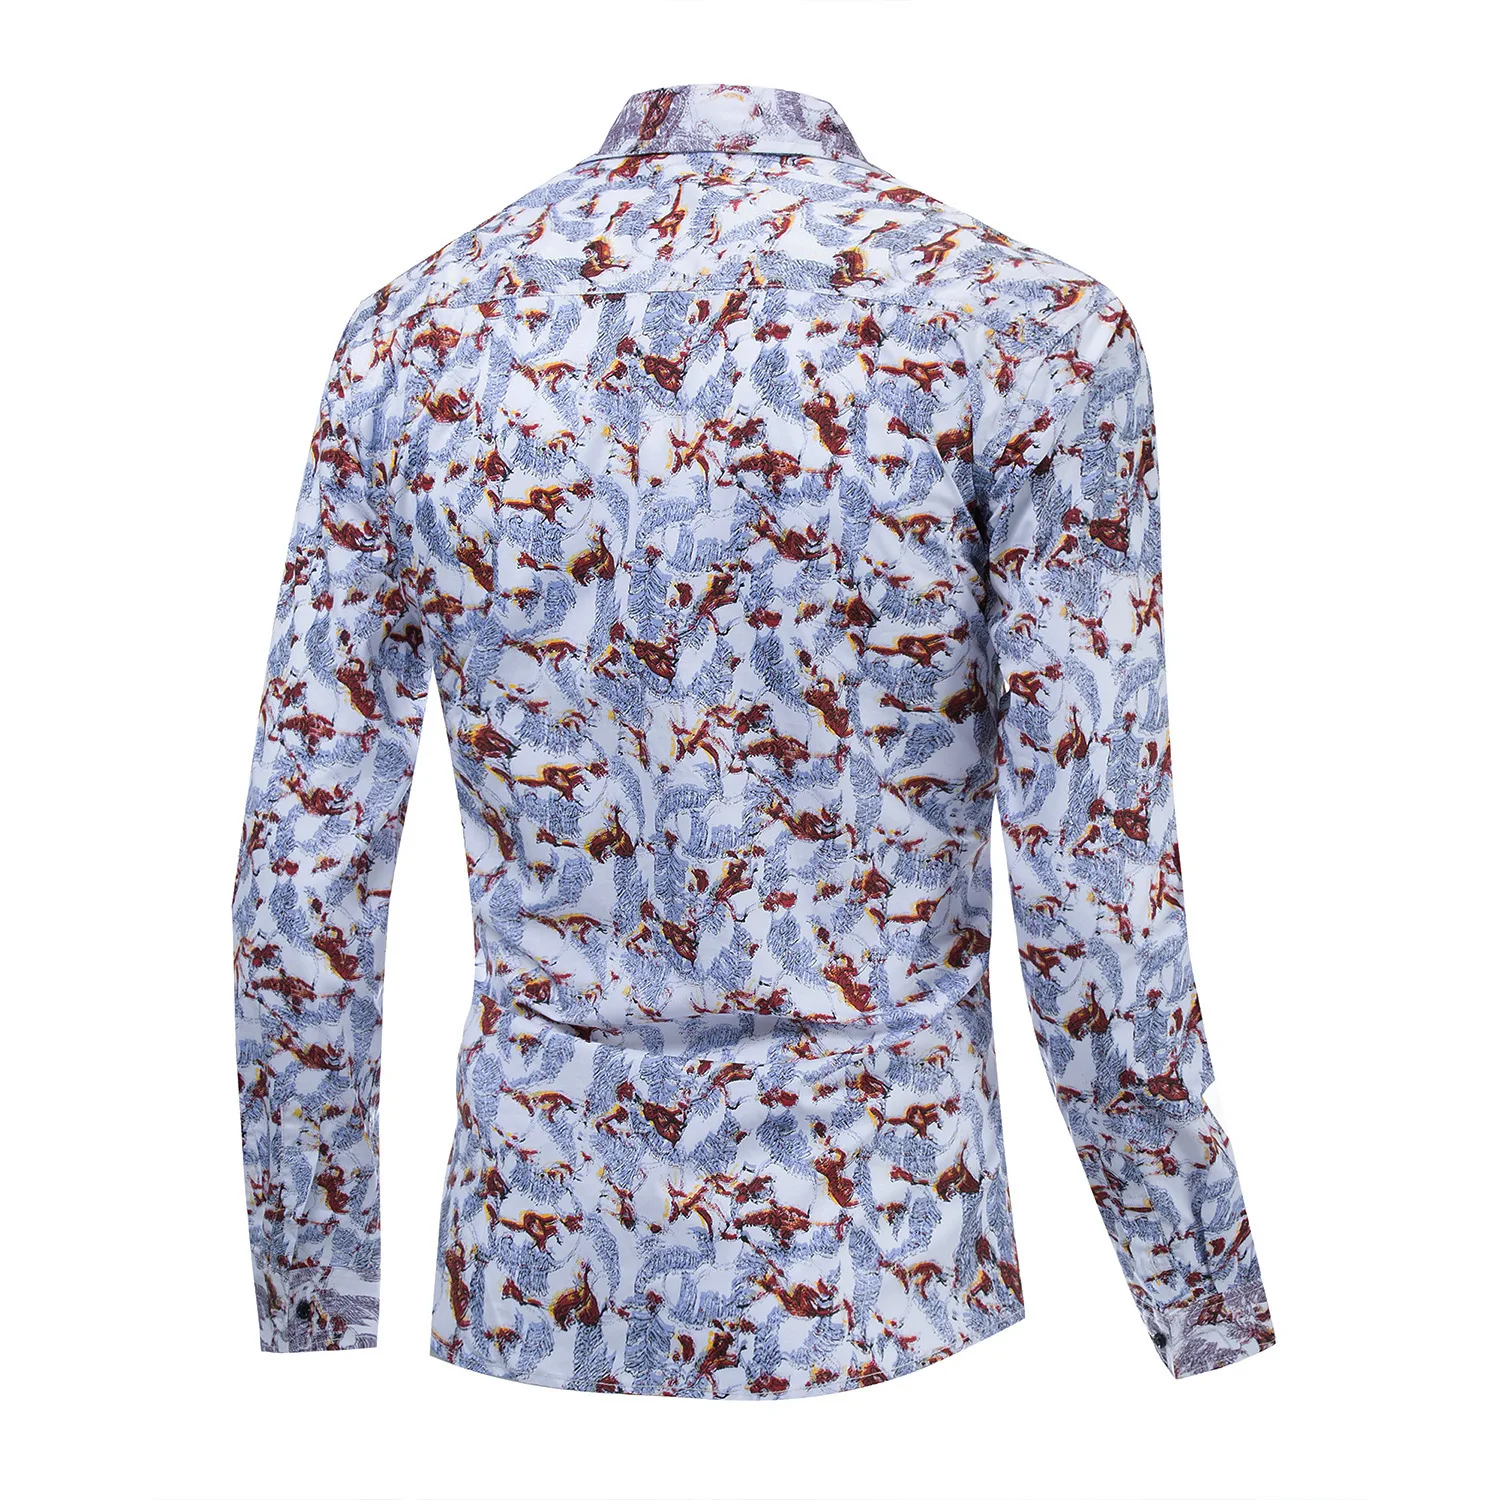 Мужская одежда Xia Chunmian рубашка с длинным рукавом орфографическая цветная рубашка с принтом 188